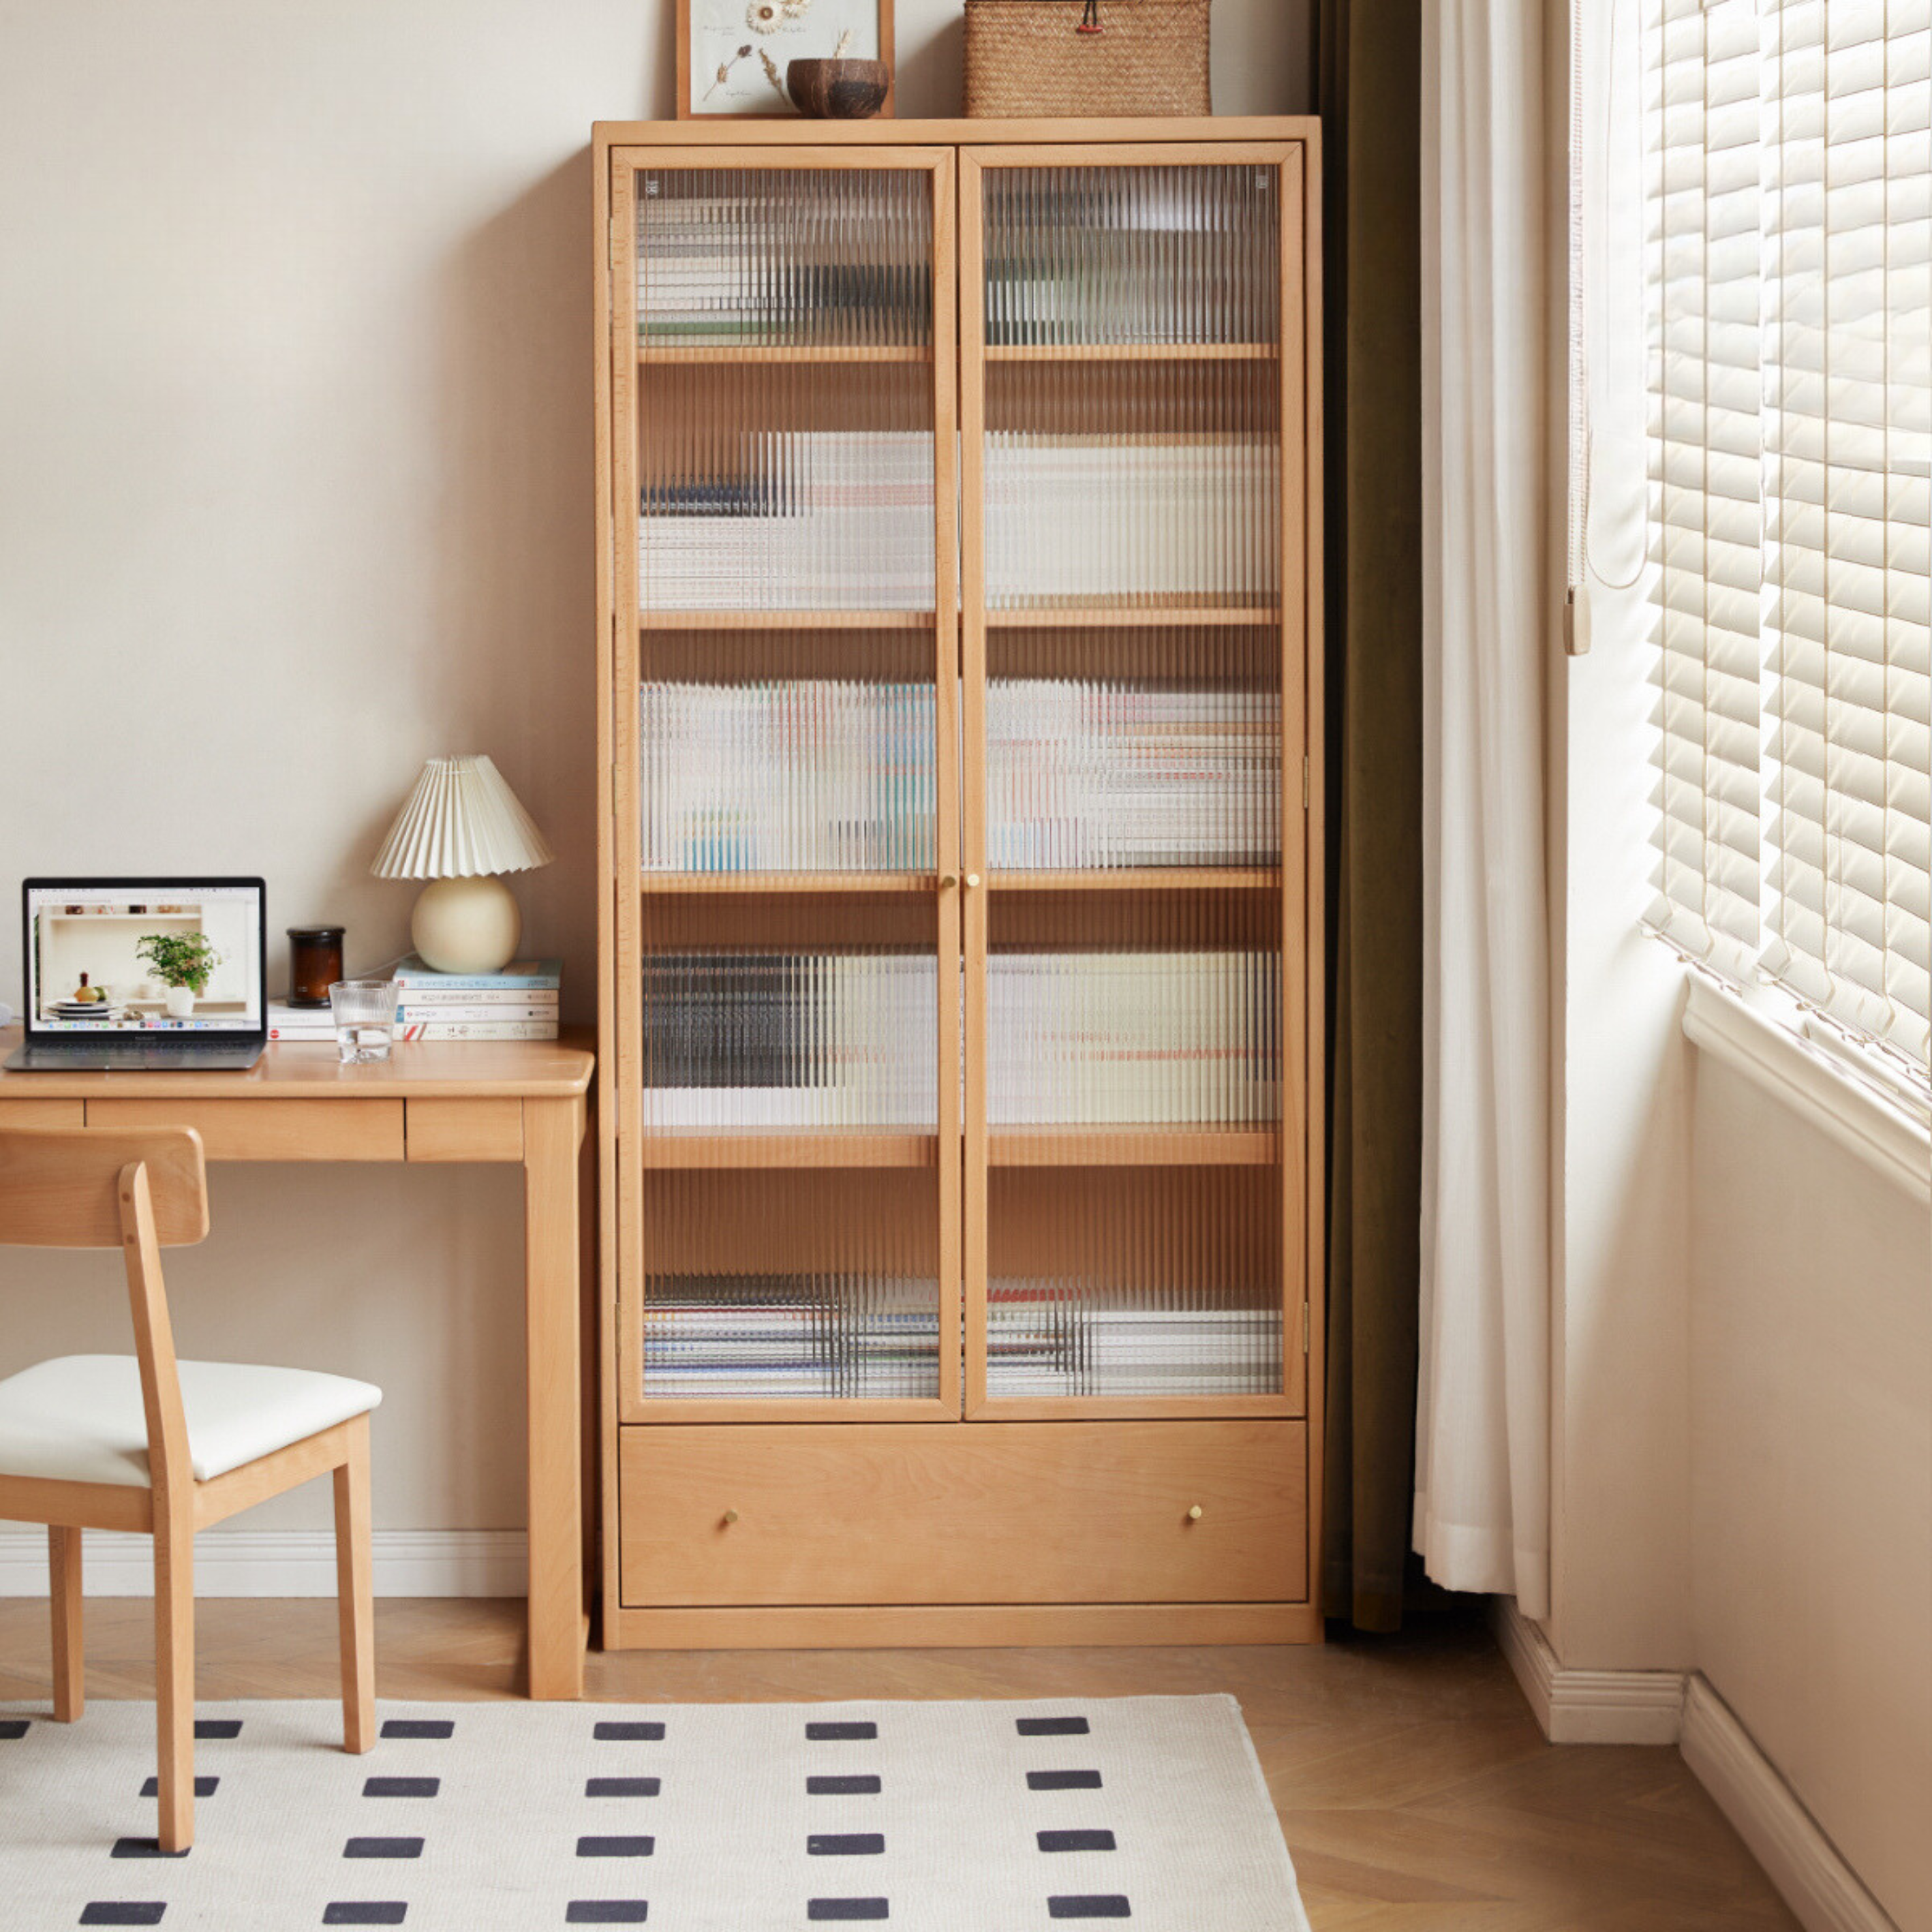 Beech European solid wood bookshelf, glass door storage display cabinet -